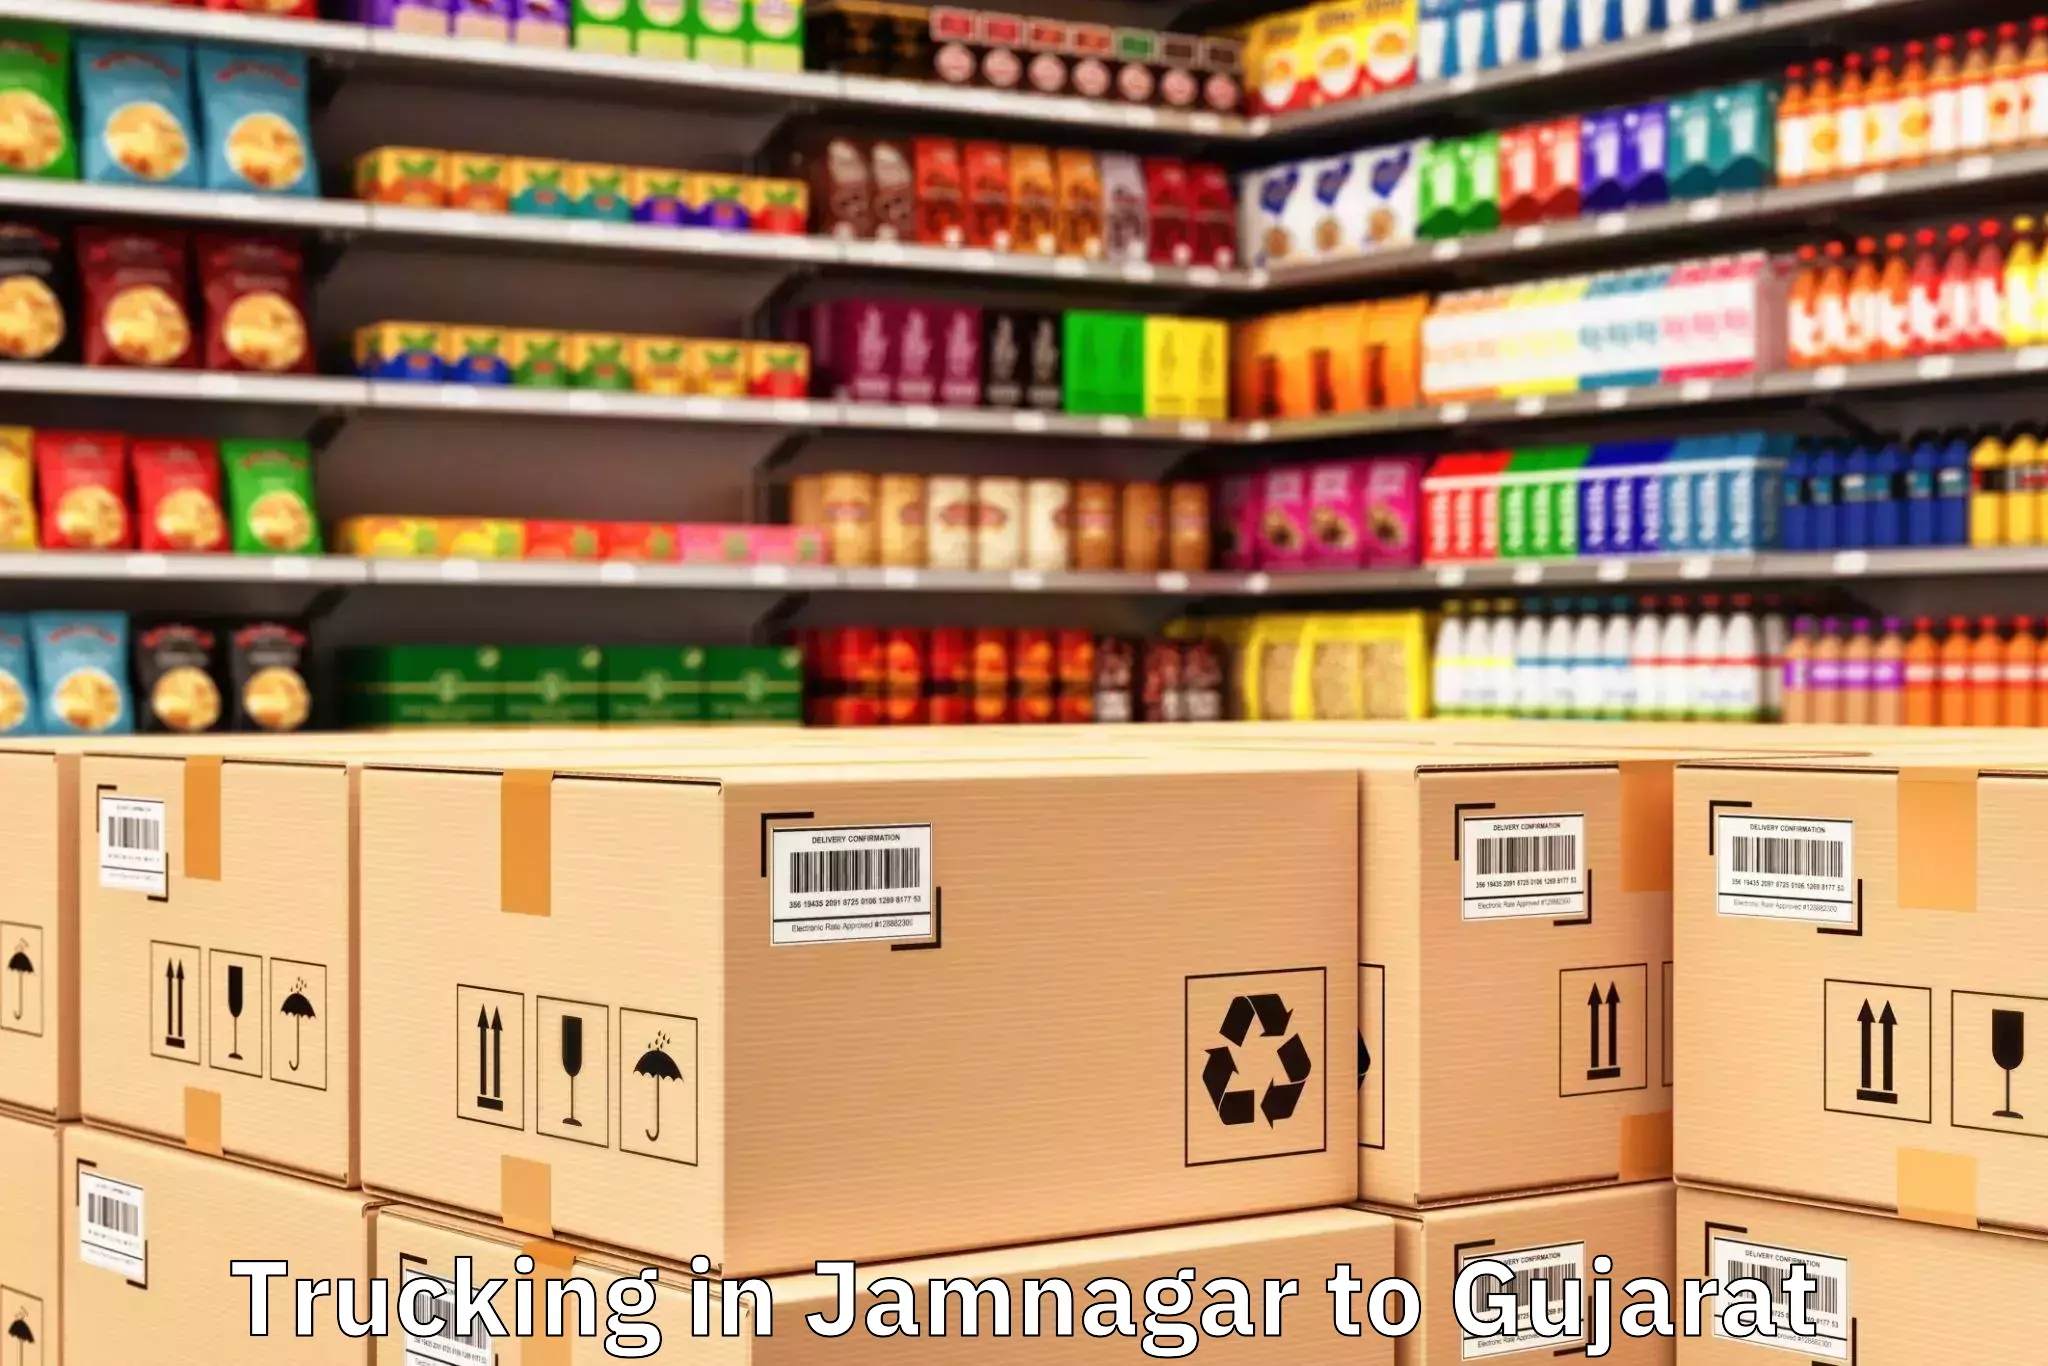 Jamnagar to Gujarat Trucking Booking